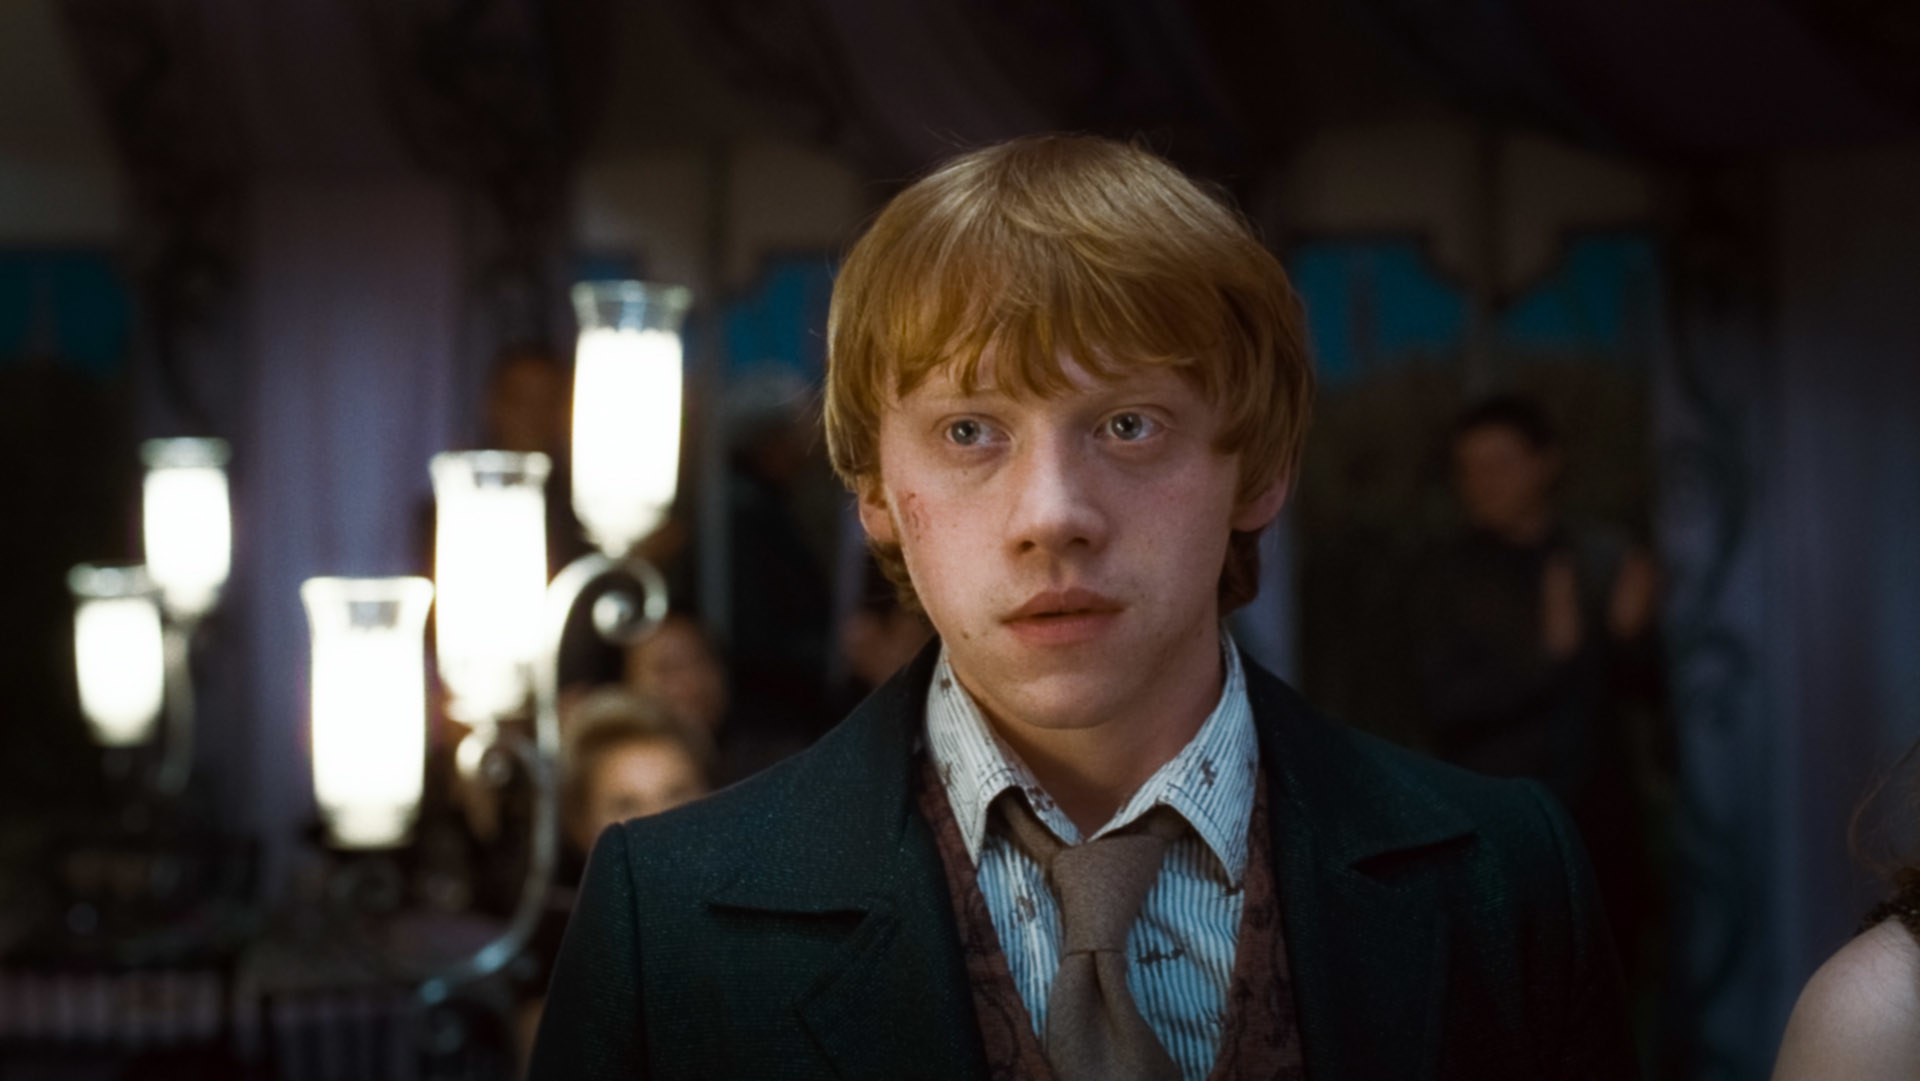 Rupert as Ron